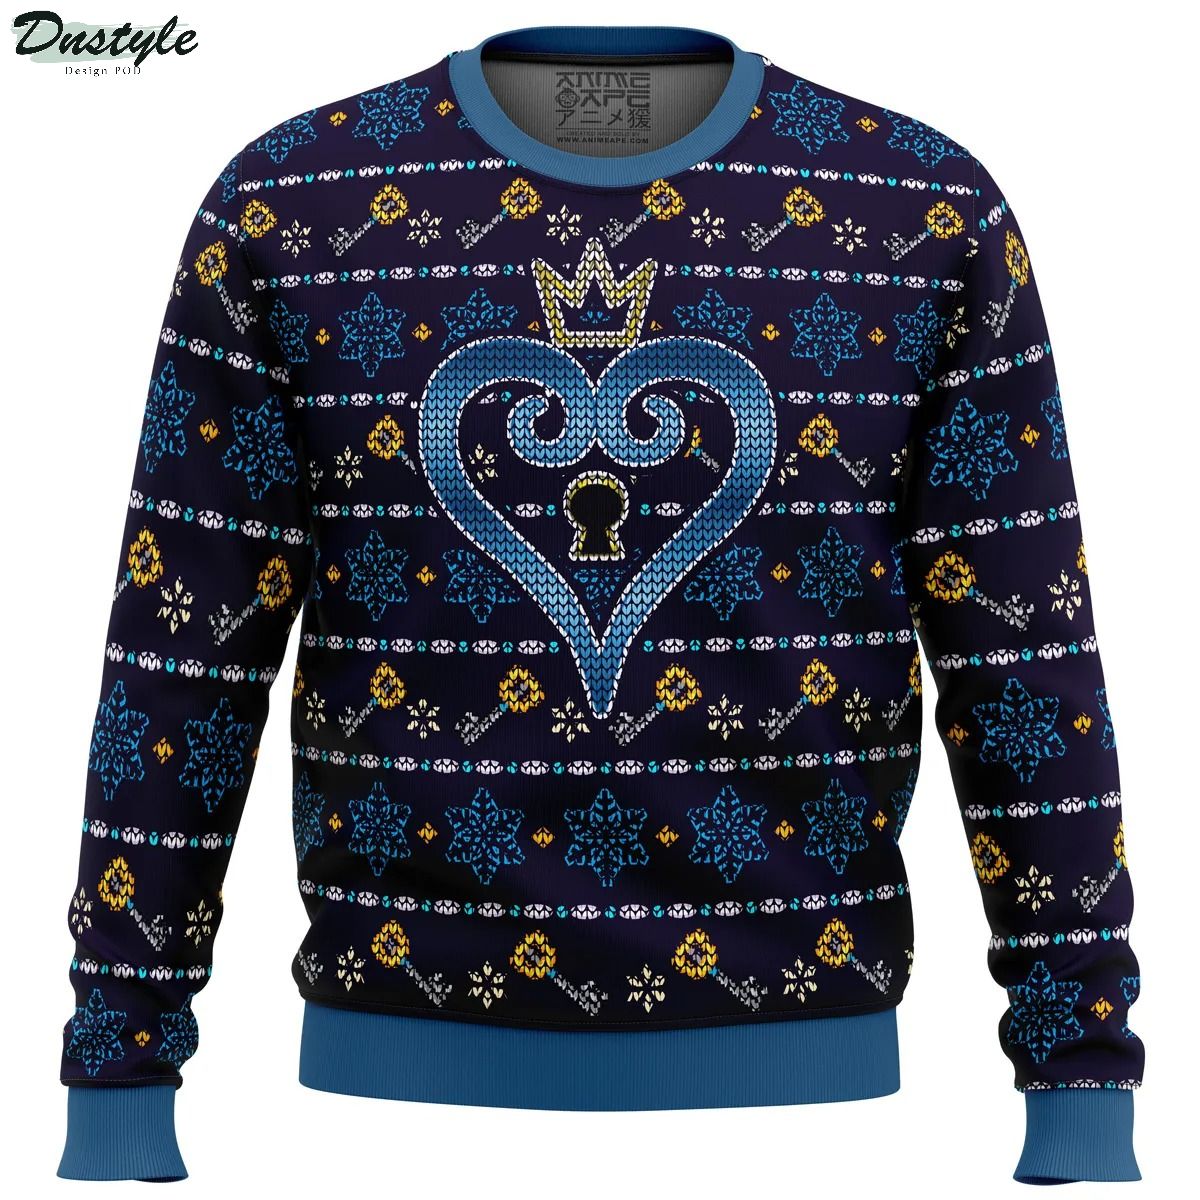 Keyblade Sora Kingdom Hearts Ugly Christmas Sweater